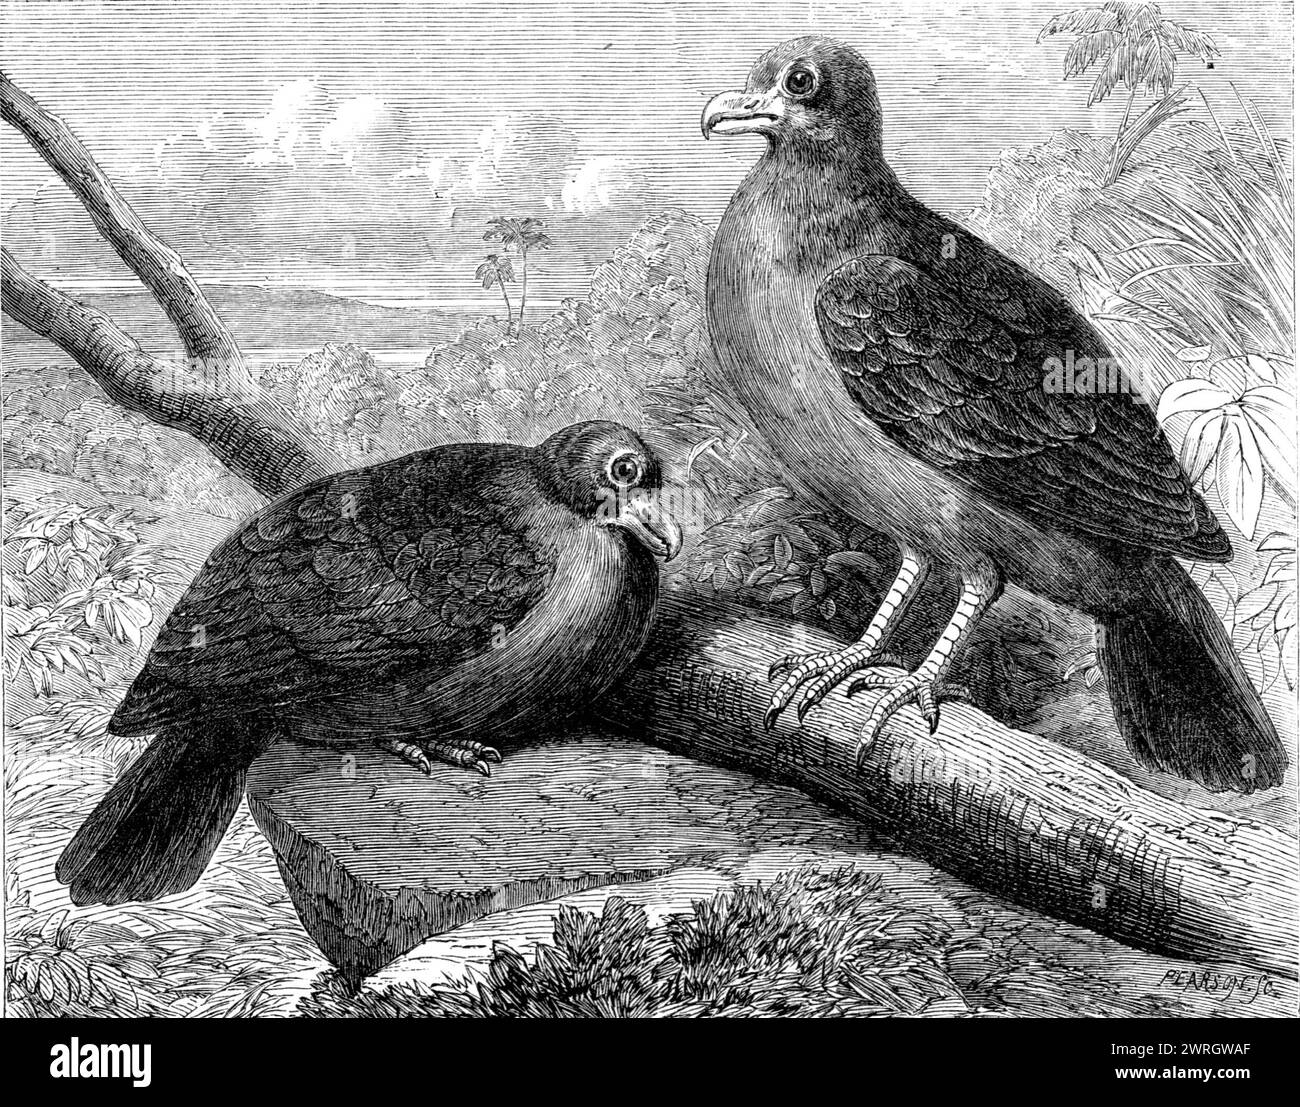 Seltene Vögel von Navigators' Islands: Didunculus strigirostris oder Zahnschnabeltaube, 1864. Kupferstich aus einer Zeichnung von E. Thomas. "Eine Notiz dieses einzigartigen Vogels, der als fast ausgestorben galt, wird zweifellos für Ornithologen von Interesse sein... der Didunkel hat eine sehr begrenzte Anzahl von Wohngebieten. Sie wurde nur auf den Samoan- oder Navigators-Inseln gefunden. Er erhielt den Gattungsnamen Didunkulus, oder Little Dodo, aufgrund seiner Ähnlichkeit mit dem gefeierten ausgestorbenen Vogel Dodo, wie der Didunkulus in seiner Form den Charakter eines Raubvogels mit dem des h verbindet Stockfoto